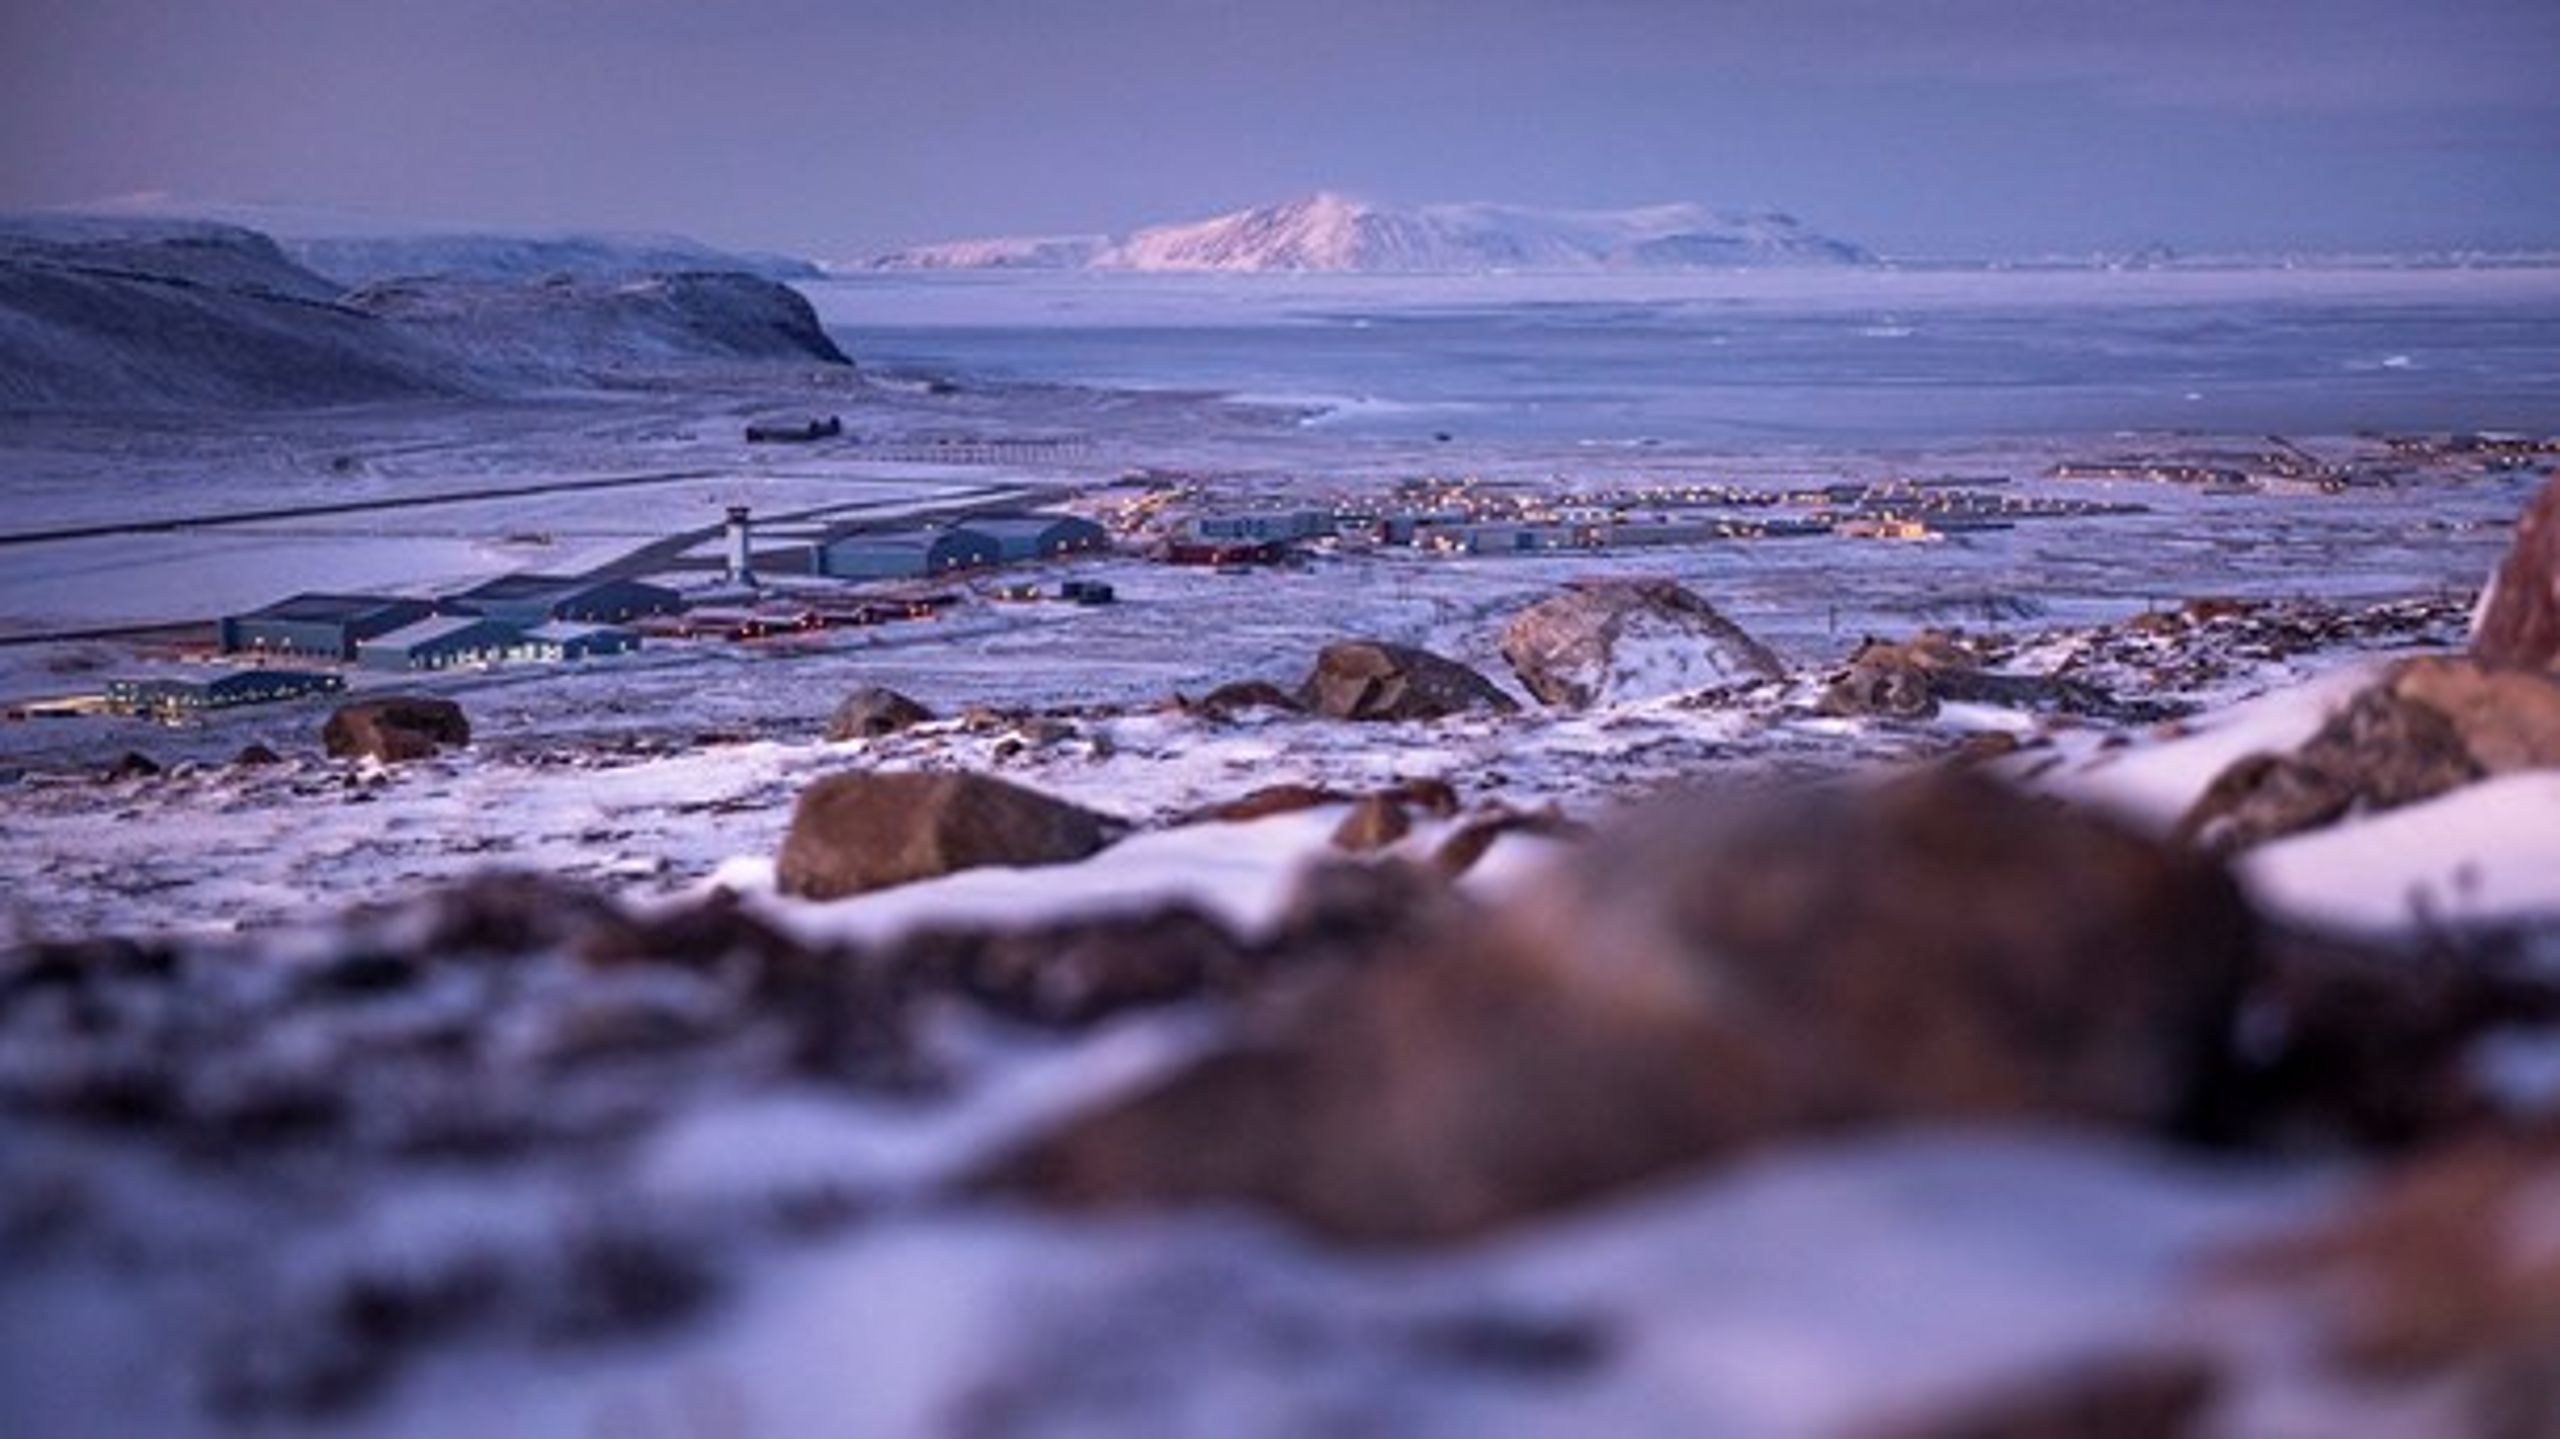 En århundrede gammel forsvarspagt mellem Danmark og USA giver amerikansk militær nærmest ubegrænsede rettigheder i Grønland ved USA’s nordligste base, Thule Air Base